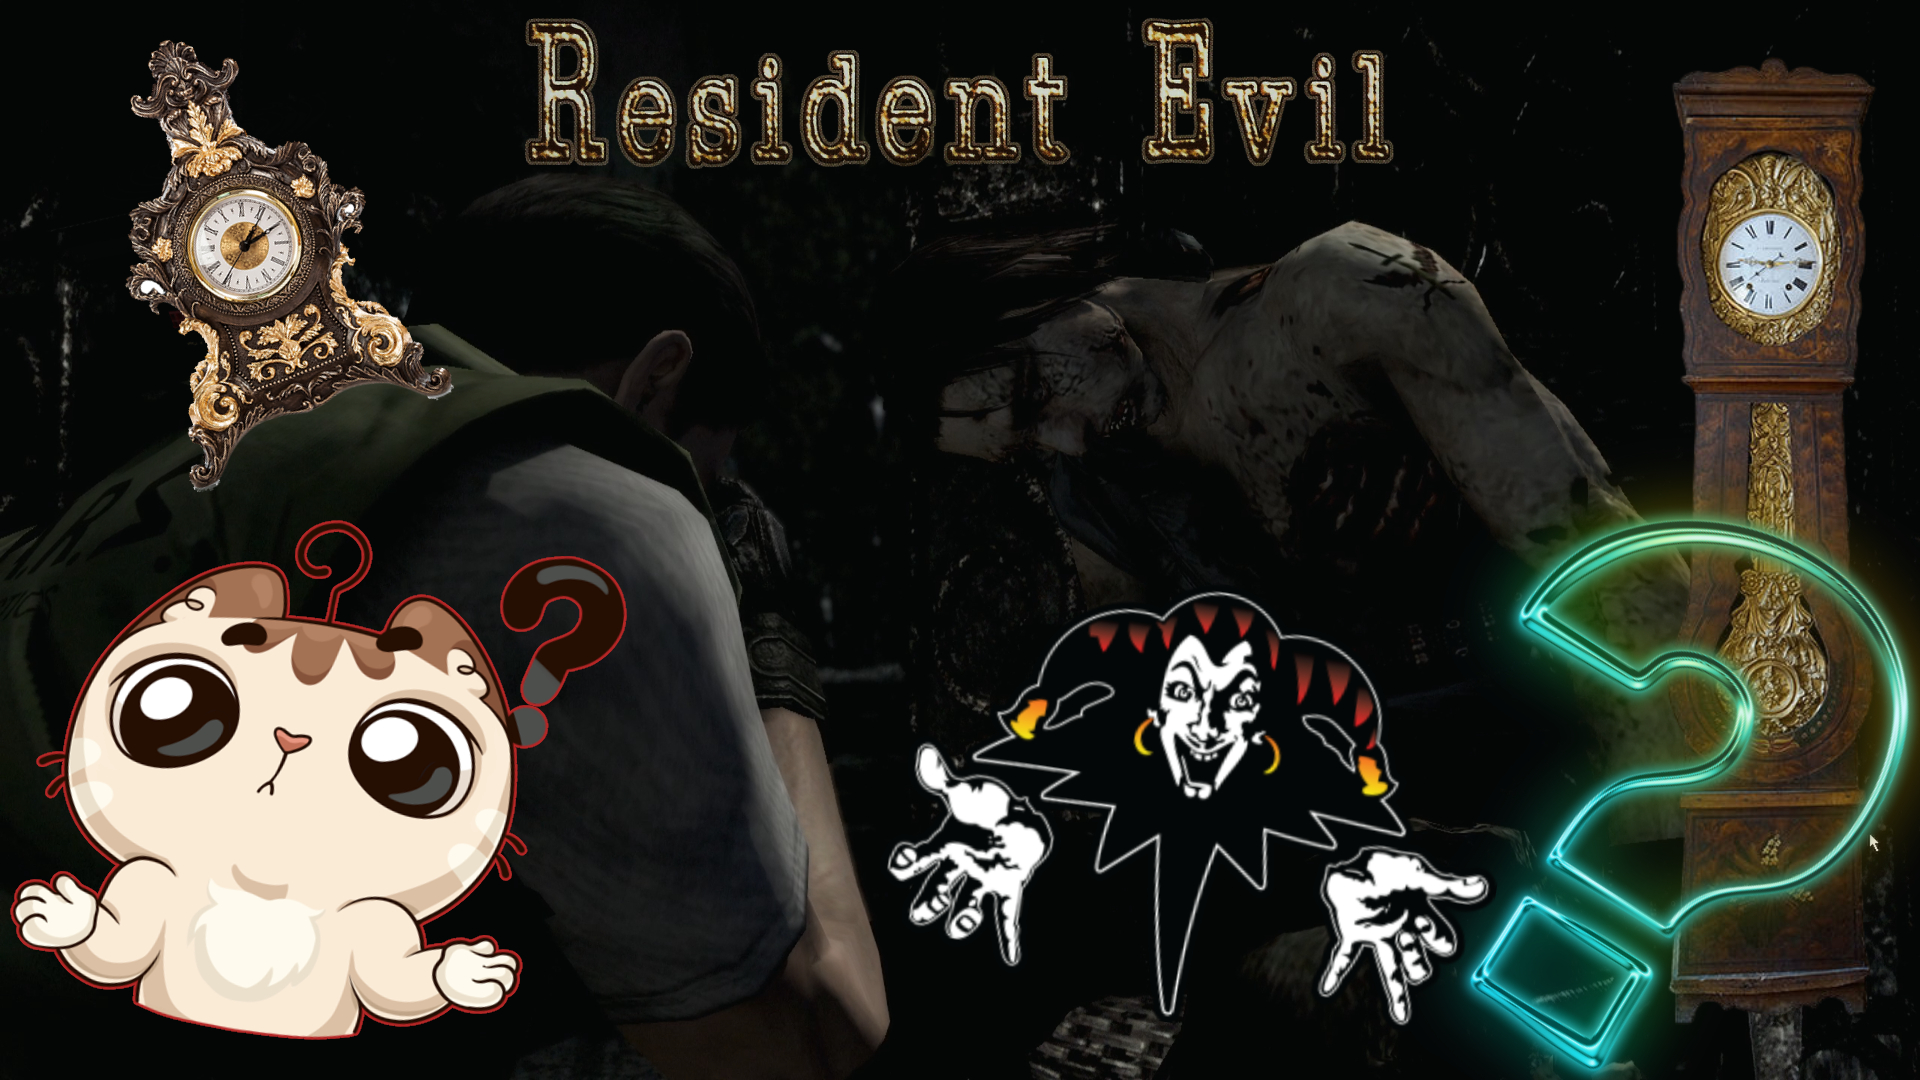 ТАЙНА СТАРИННЫХ ЧАСОВ ▻ Resident Evil #6